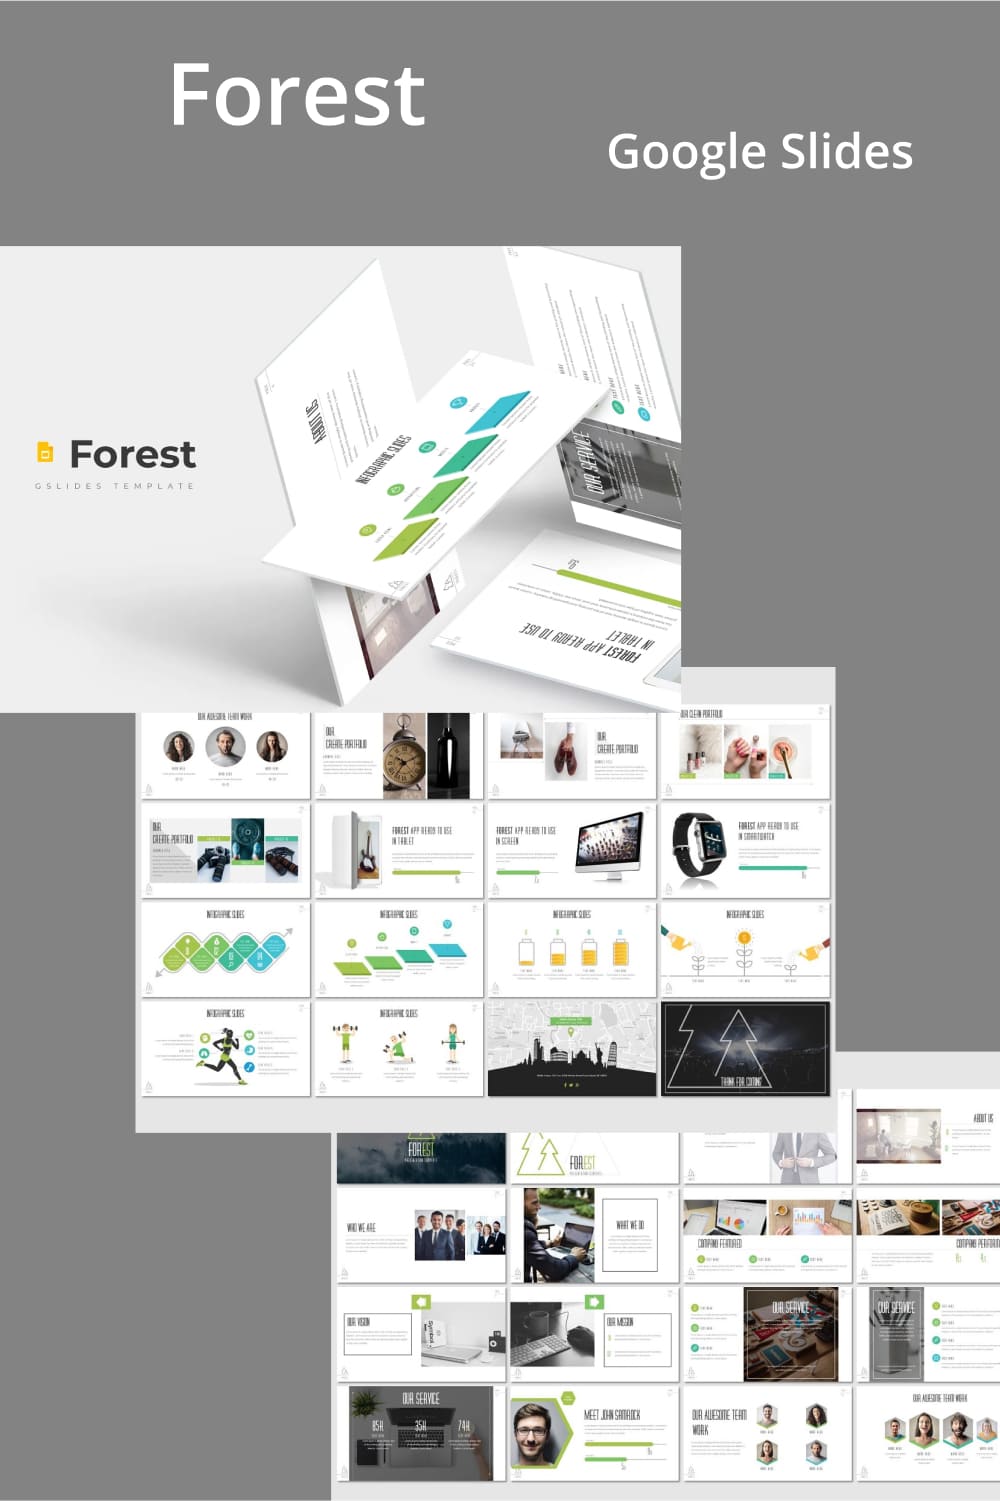 Forest - Google Slides Template.